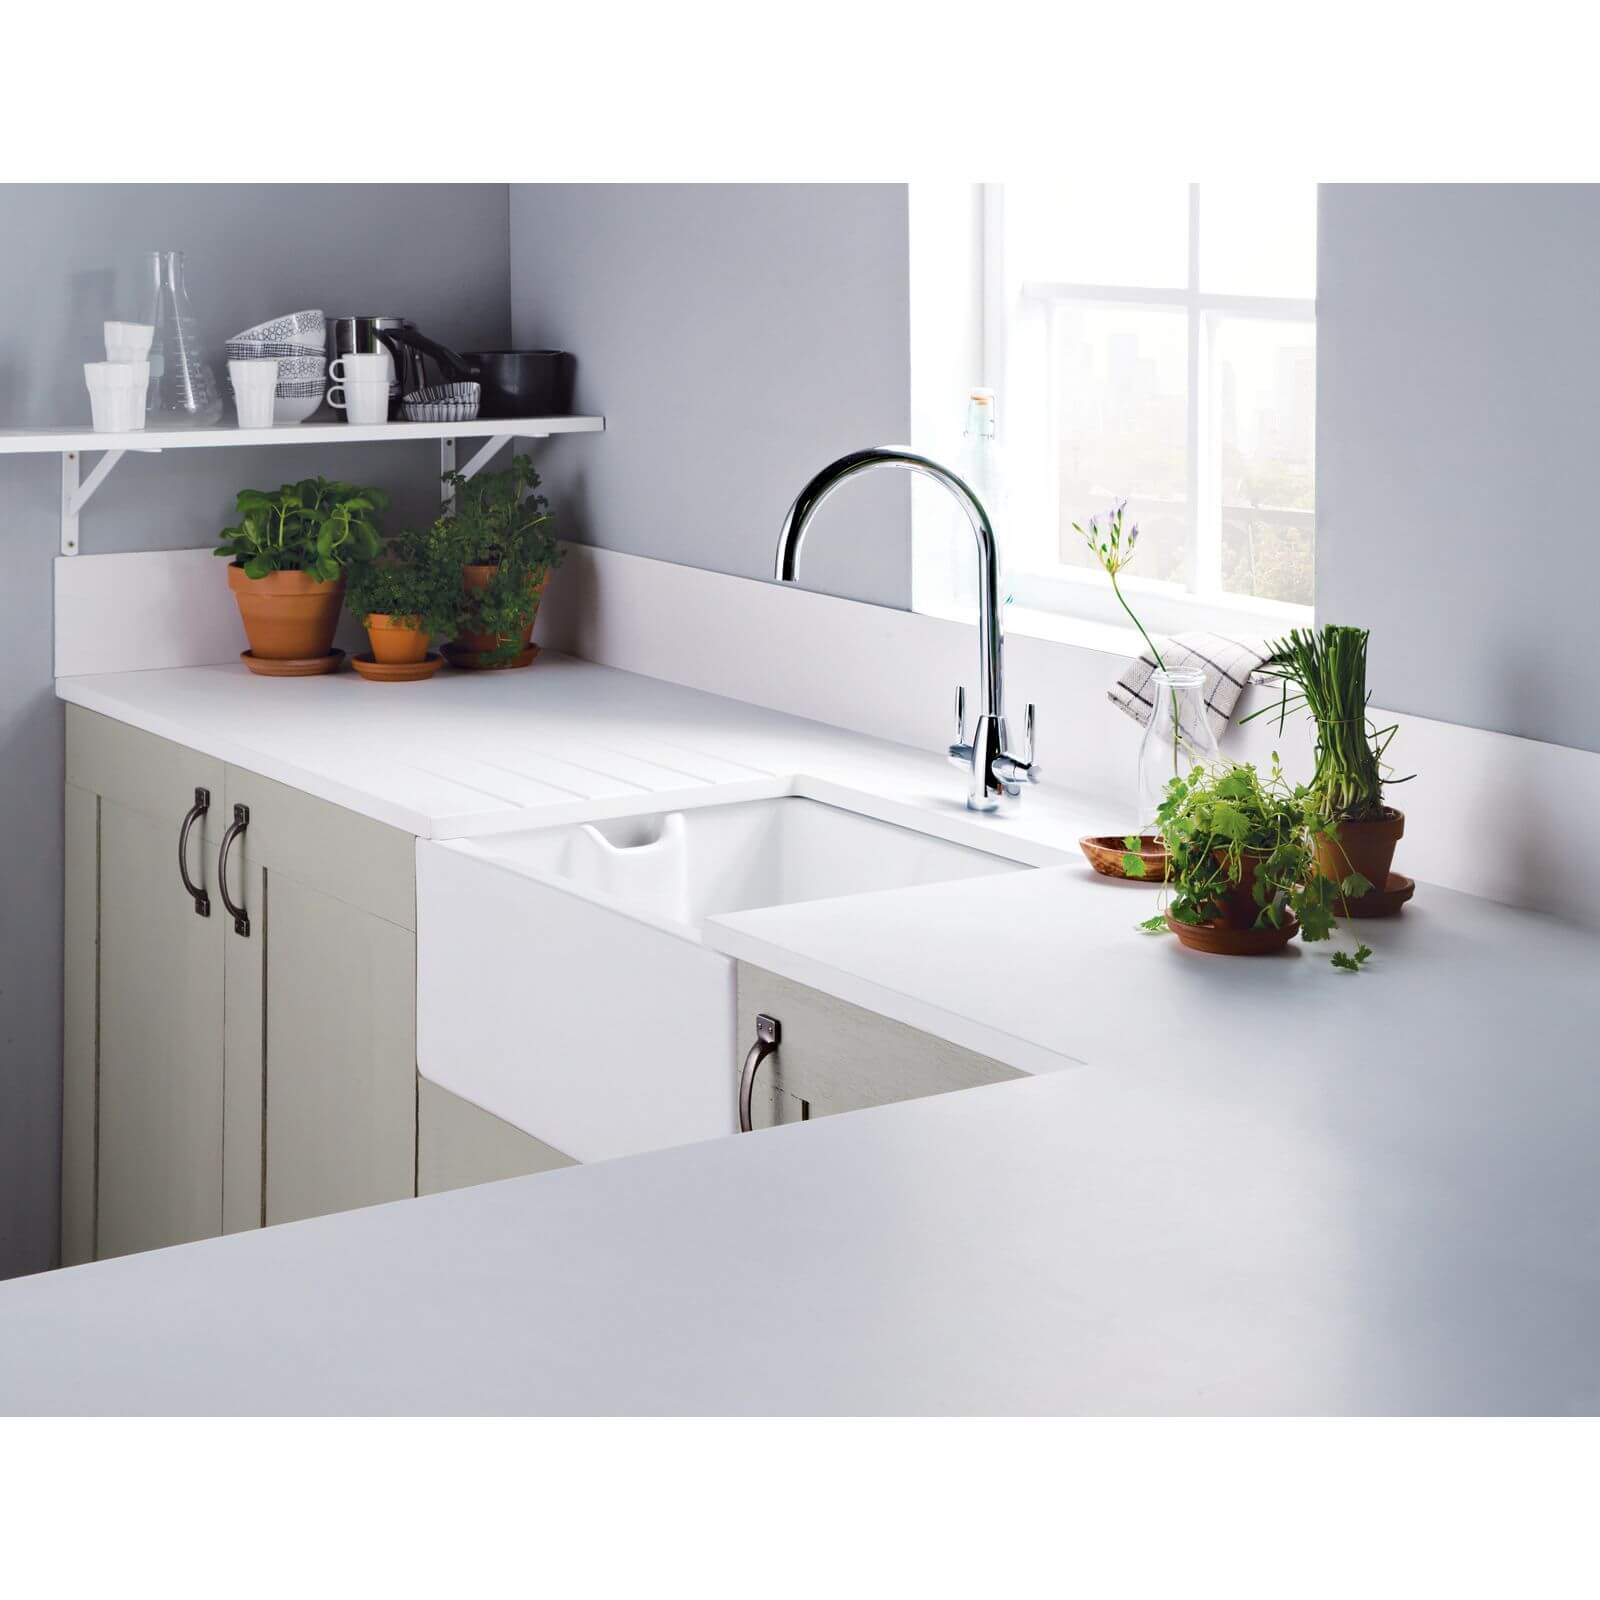 Minerva White Kitchen Worktop - 305 x 60 x 2.5cm